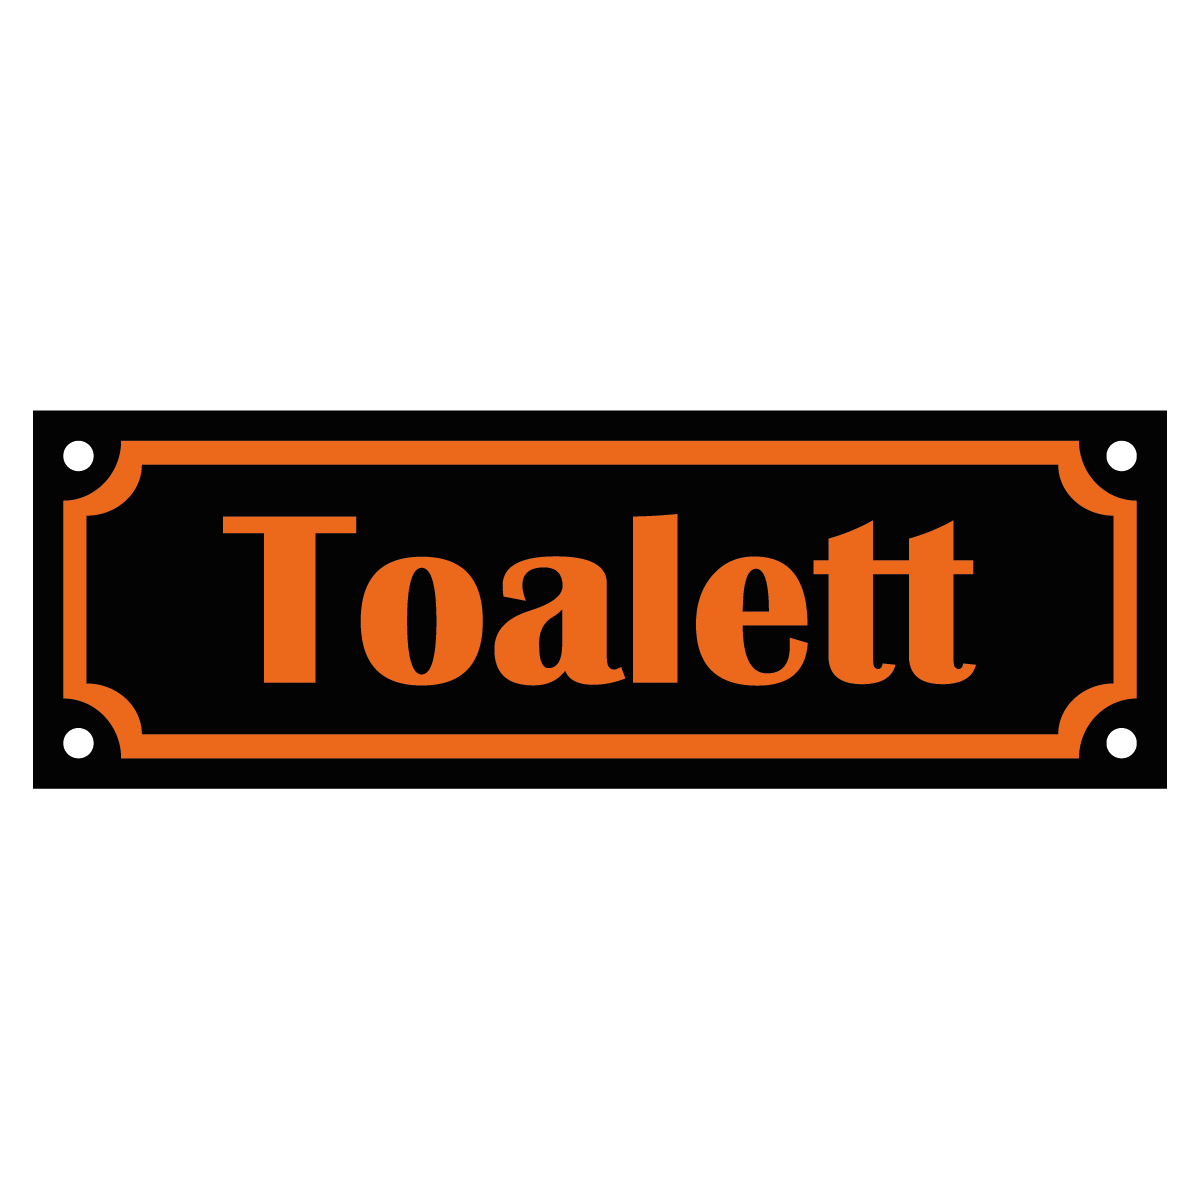 Toalett - Skylt - 150x50mm - Svart - Orange